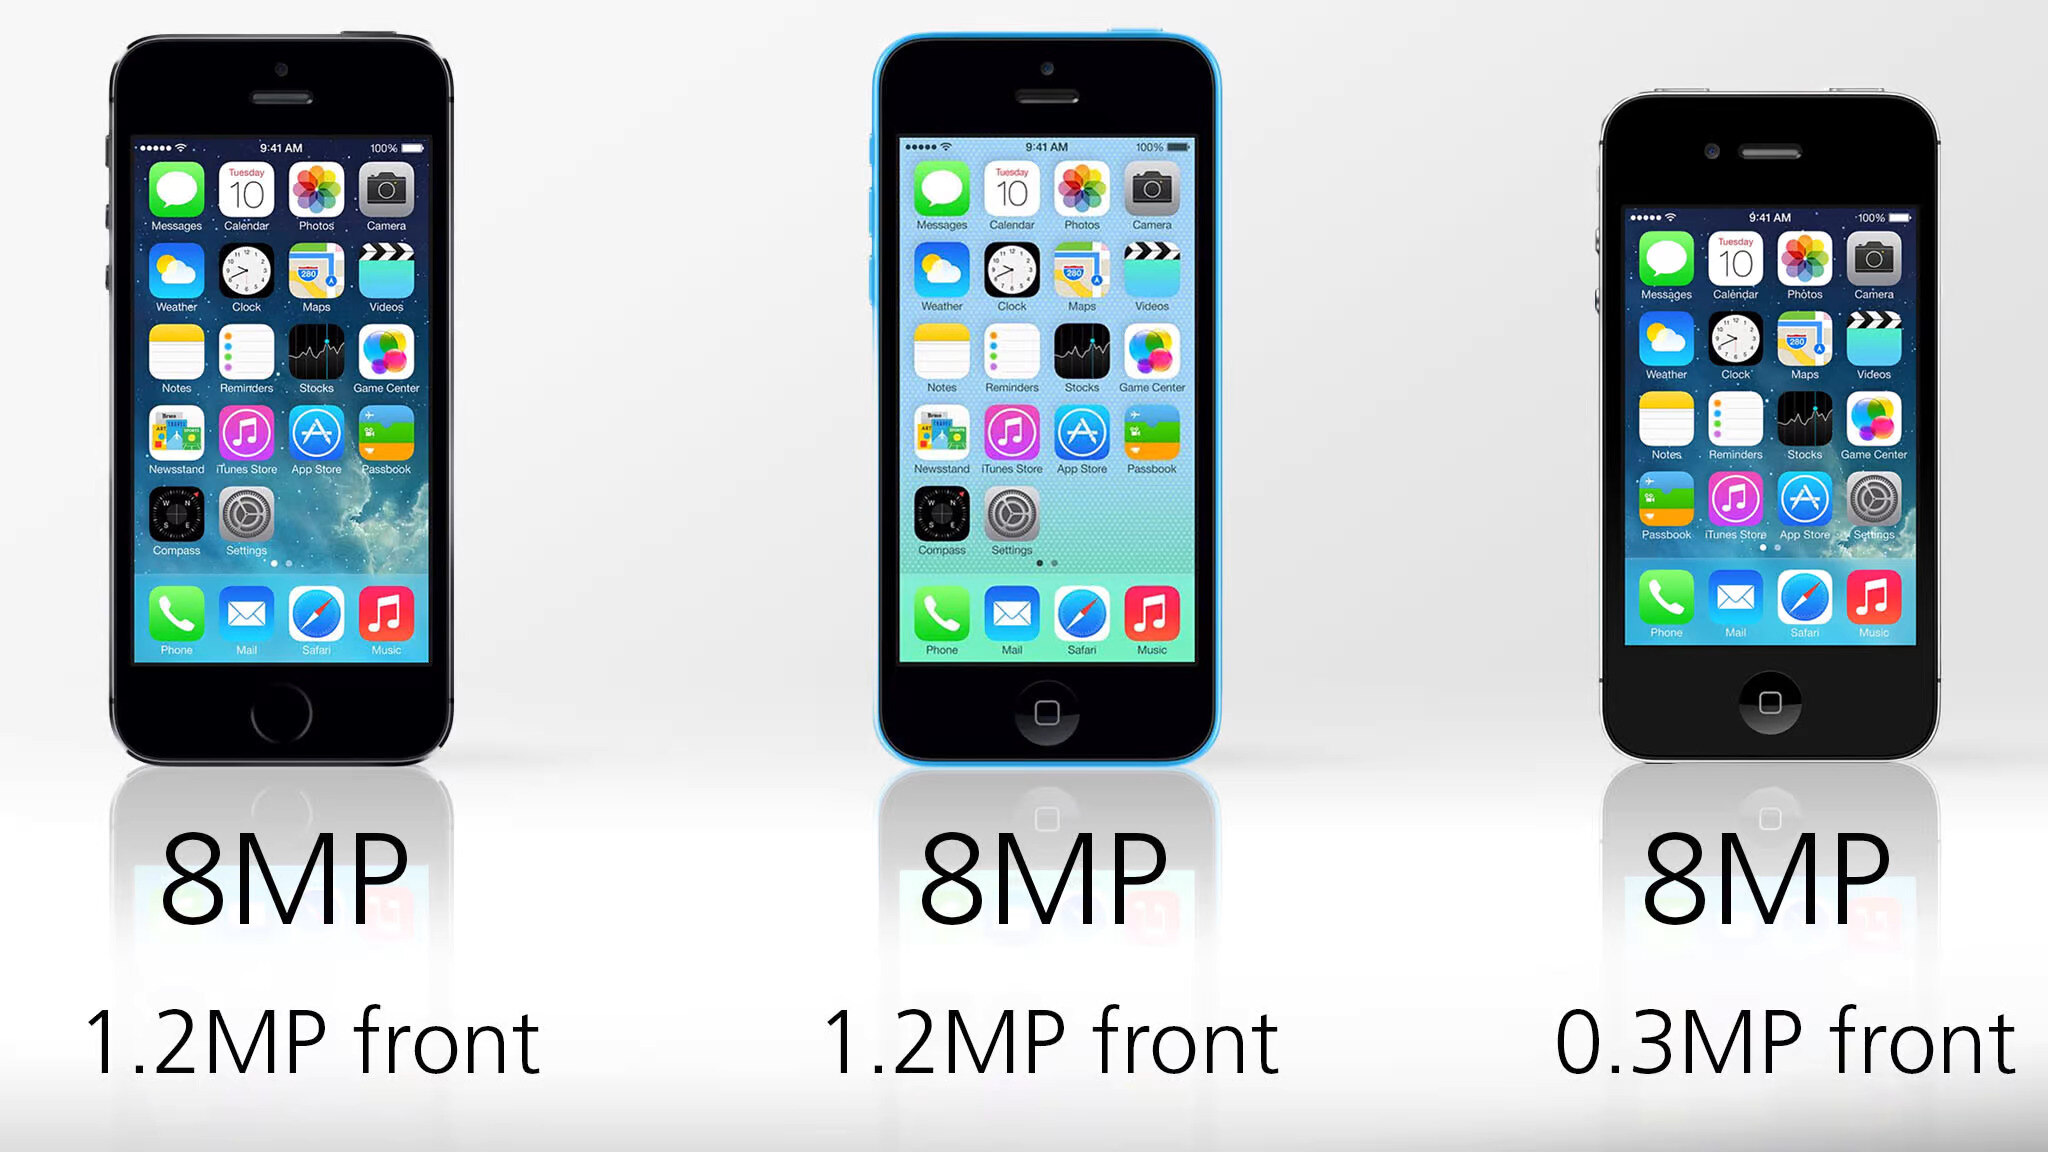 iphone-5s-vs-iphone-5c-vs-iphone-4s-spec-comparison